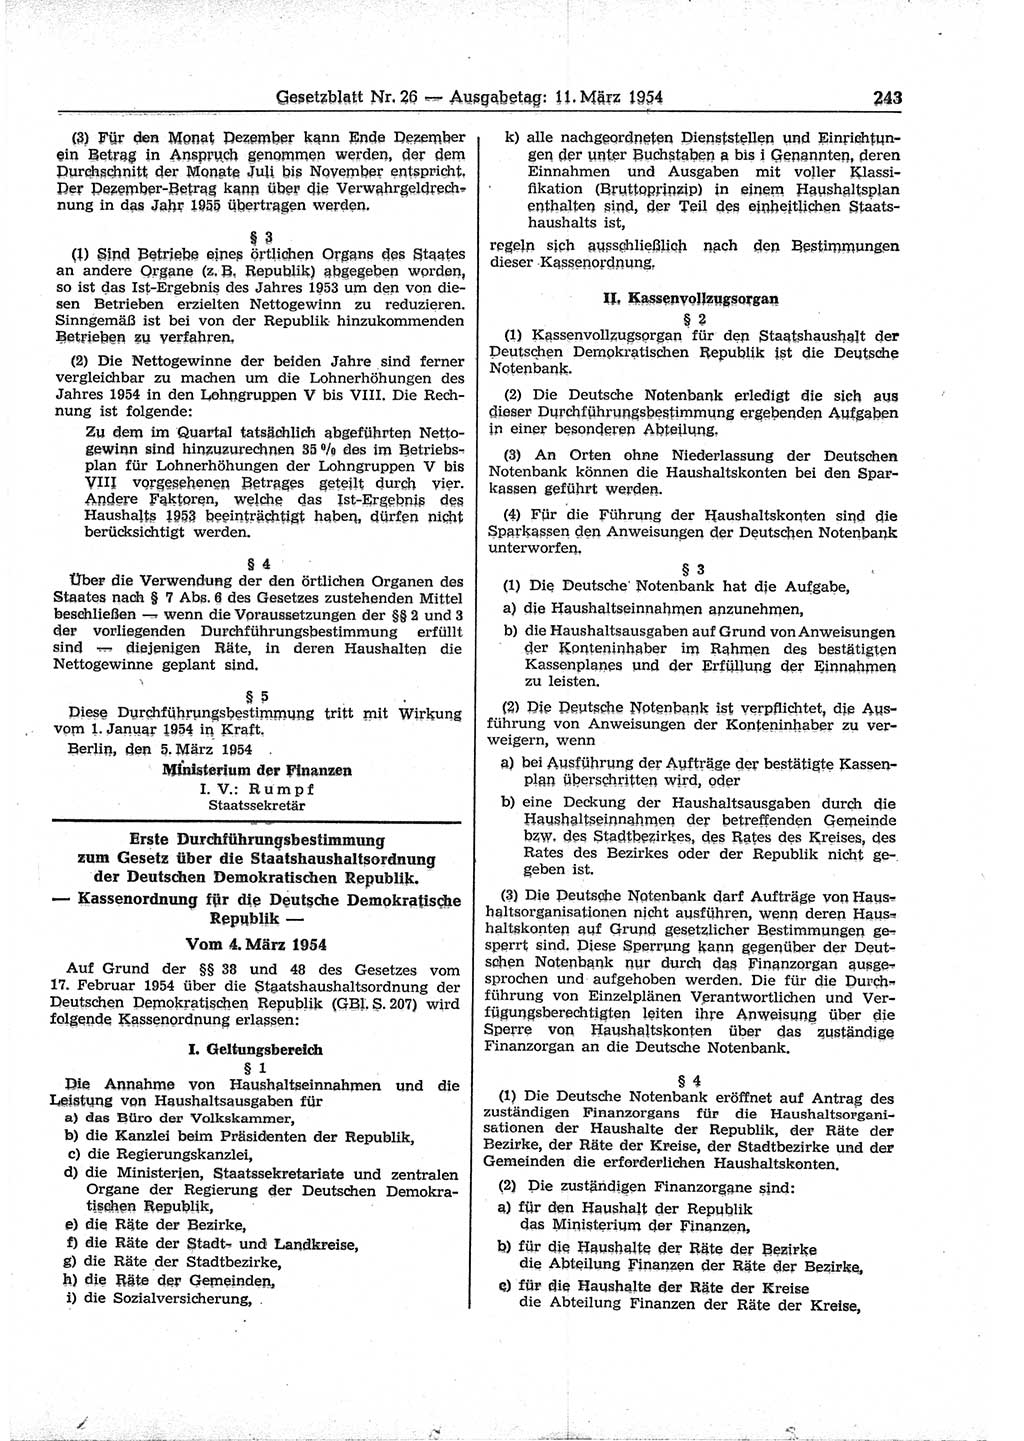 Gesetzblatt (GBl.) der Deutschen Demokratischen Republik (DDR) 1954, Seite 243 (GBl. DDR 1954, S. 243)